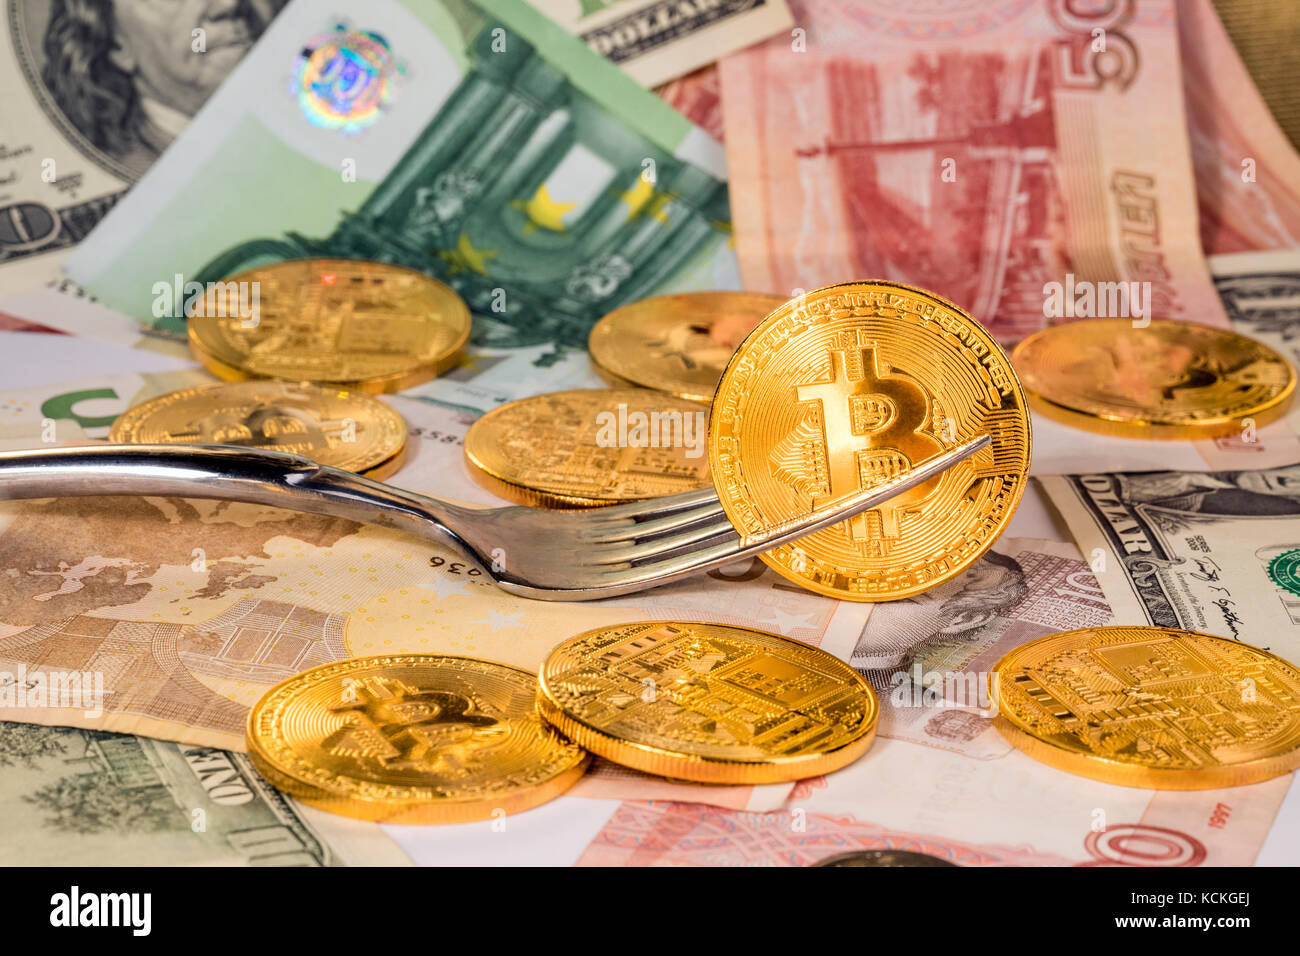 Cryptocurrency bitcoin getting nuovo disco forcella cambia. golden bitcoins sono sulle banconote di diversi paesi del mondo Foto Stock